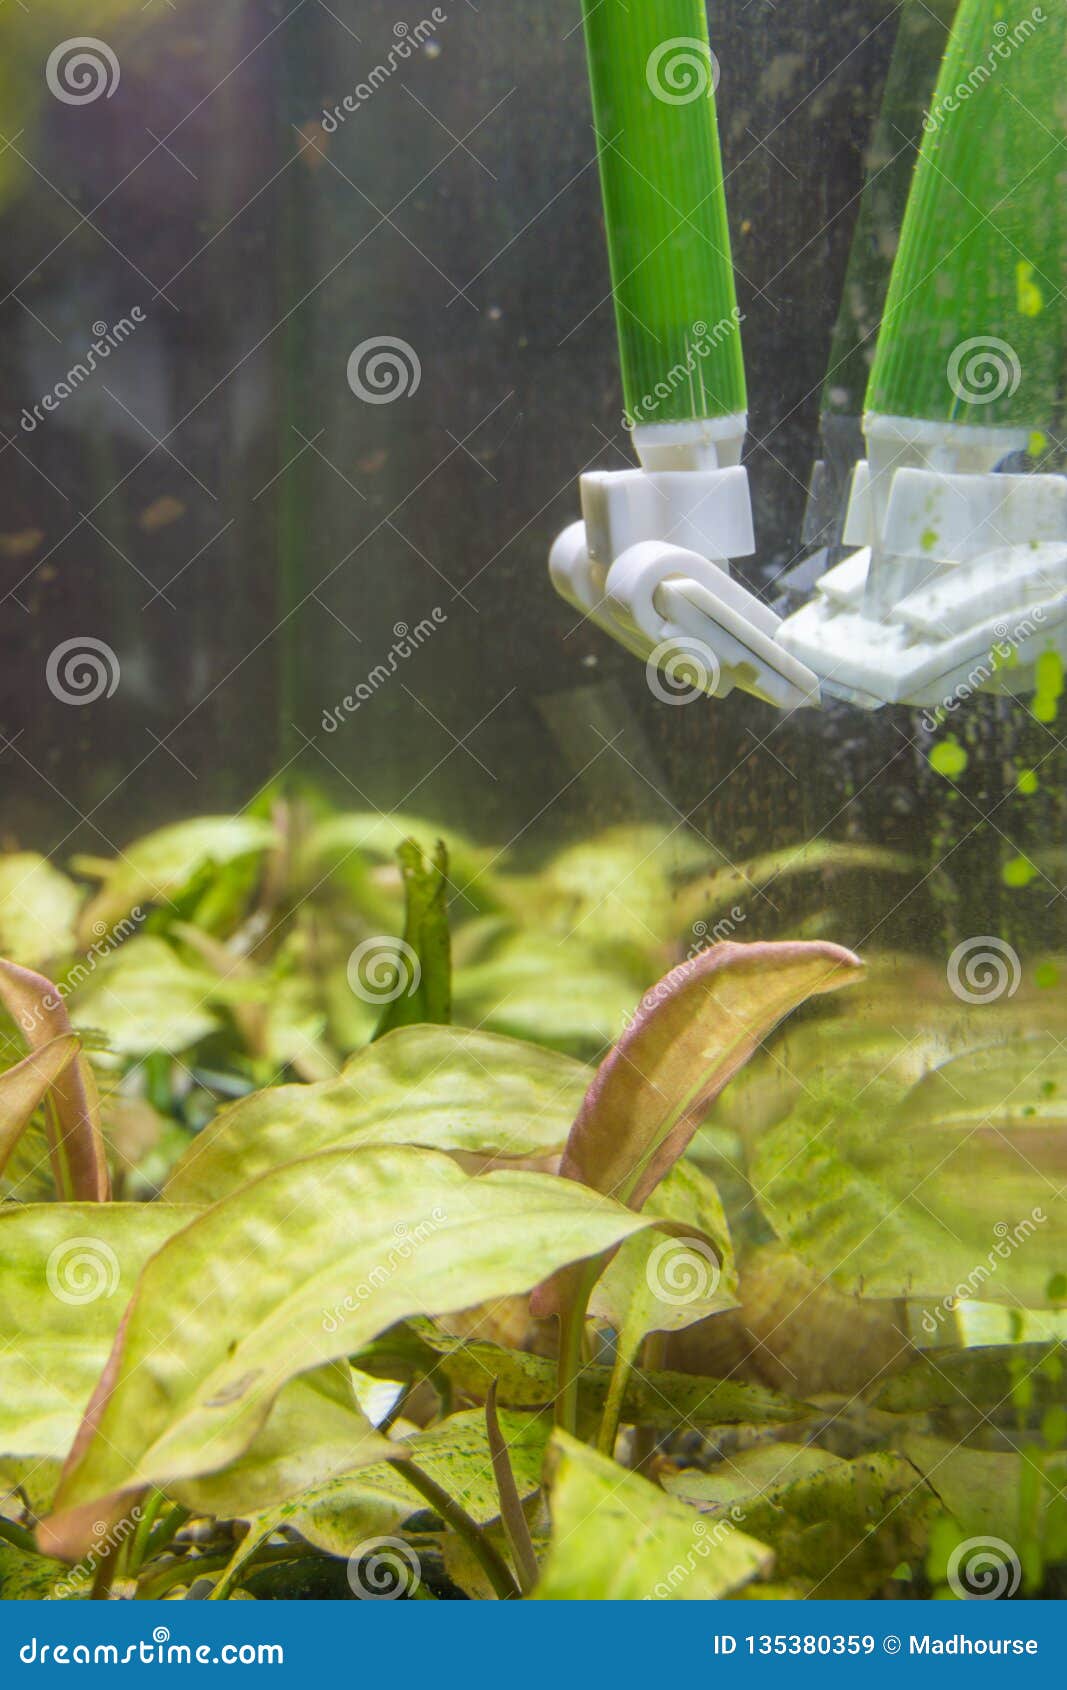 geef de bloem water Cilia sturen Het Schoonmaken Van Het Glas in Het Aquarium Van Groene Algenplaque Stock  Afbeelding - Image of vuil, blauw: 135380359